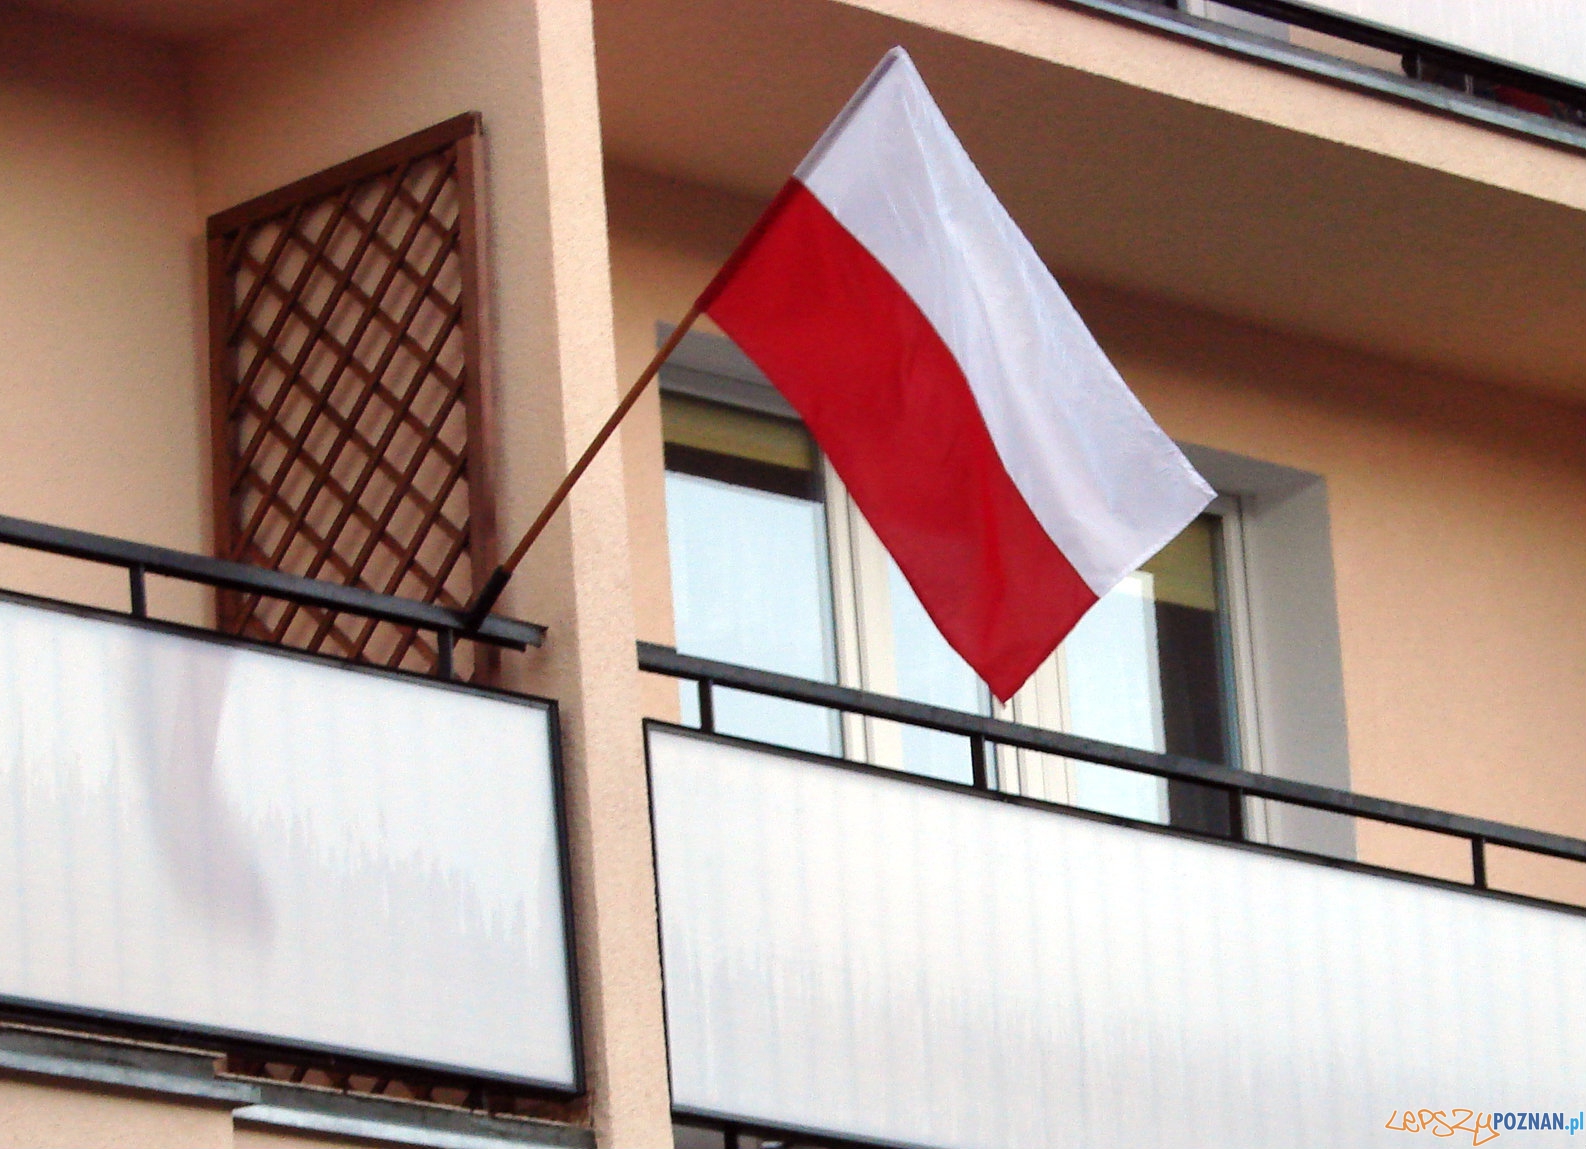 Flaga narodowa  Foto: lepszyPOZNAN.pl / tab 10.1